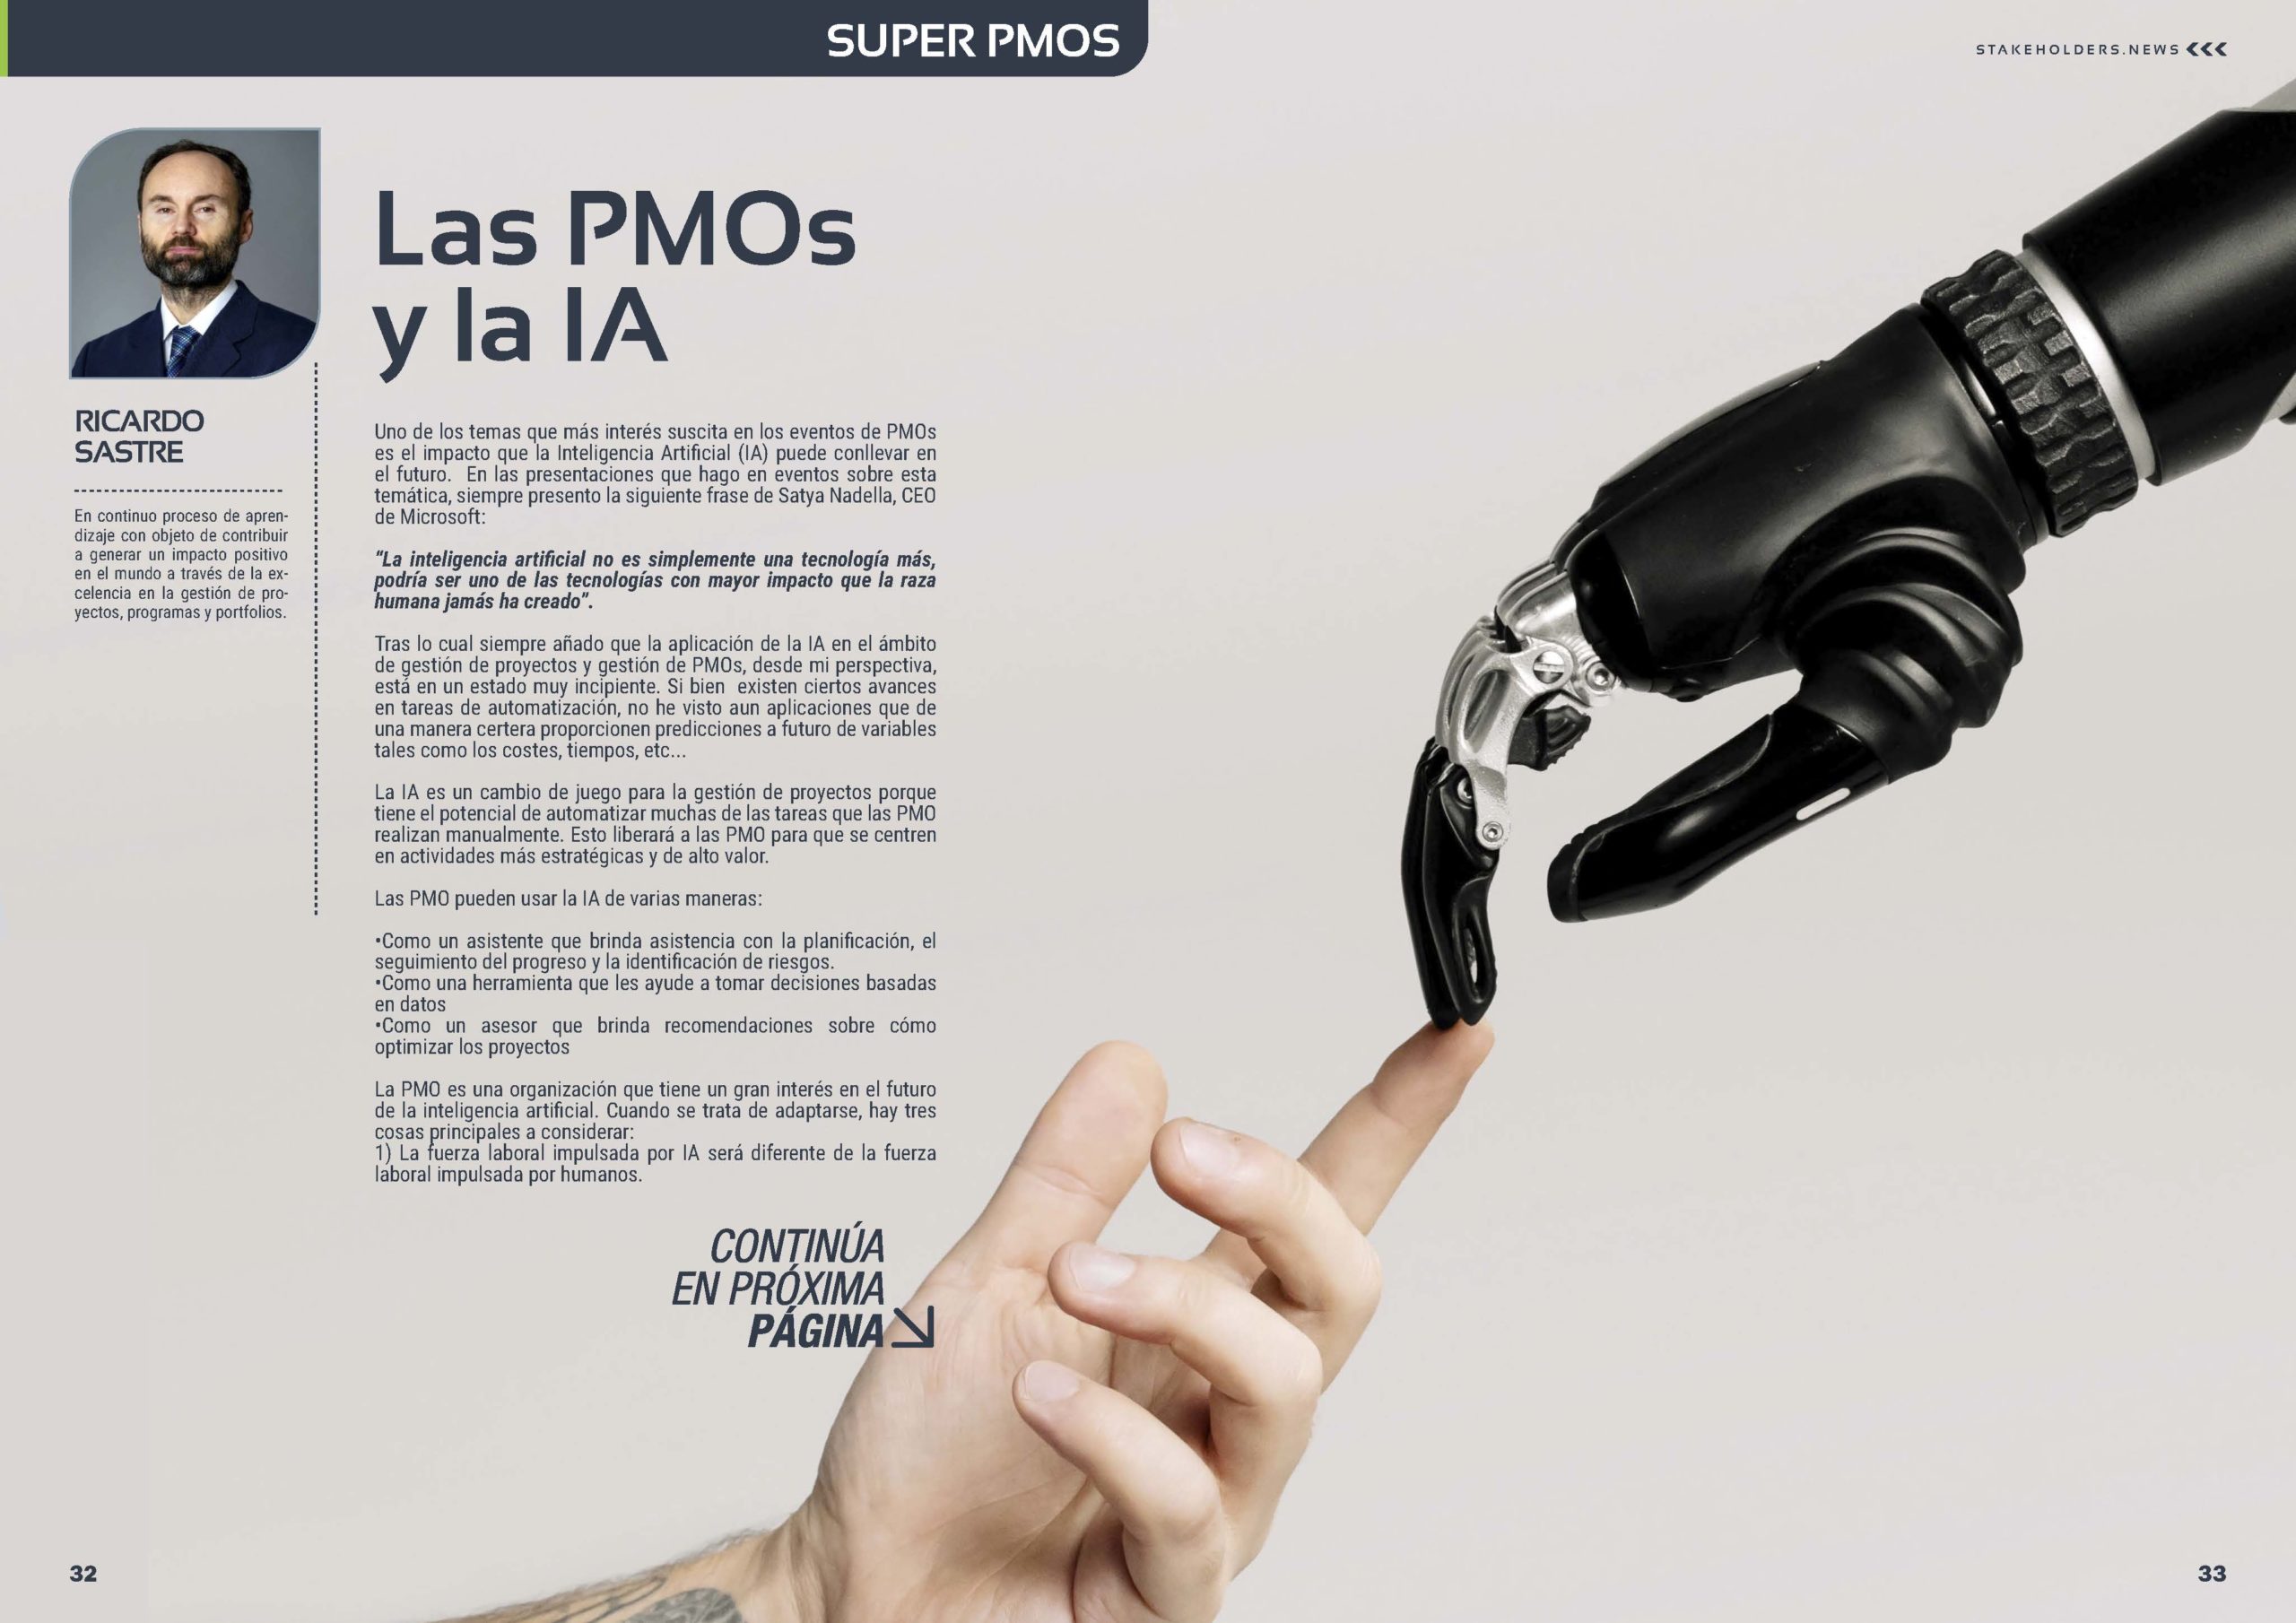 Artículo "Las #PMOs y la #IA" de Ricardo Sastre en la Sección " Súper PMOs" de la Revista Stakeholders.news